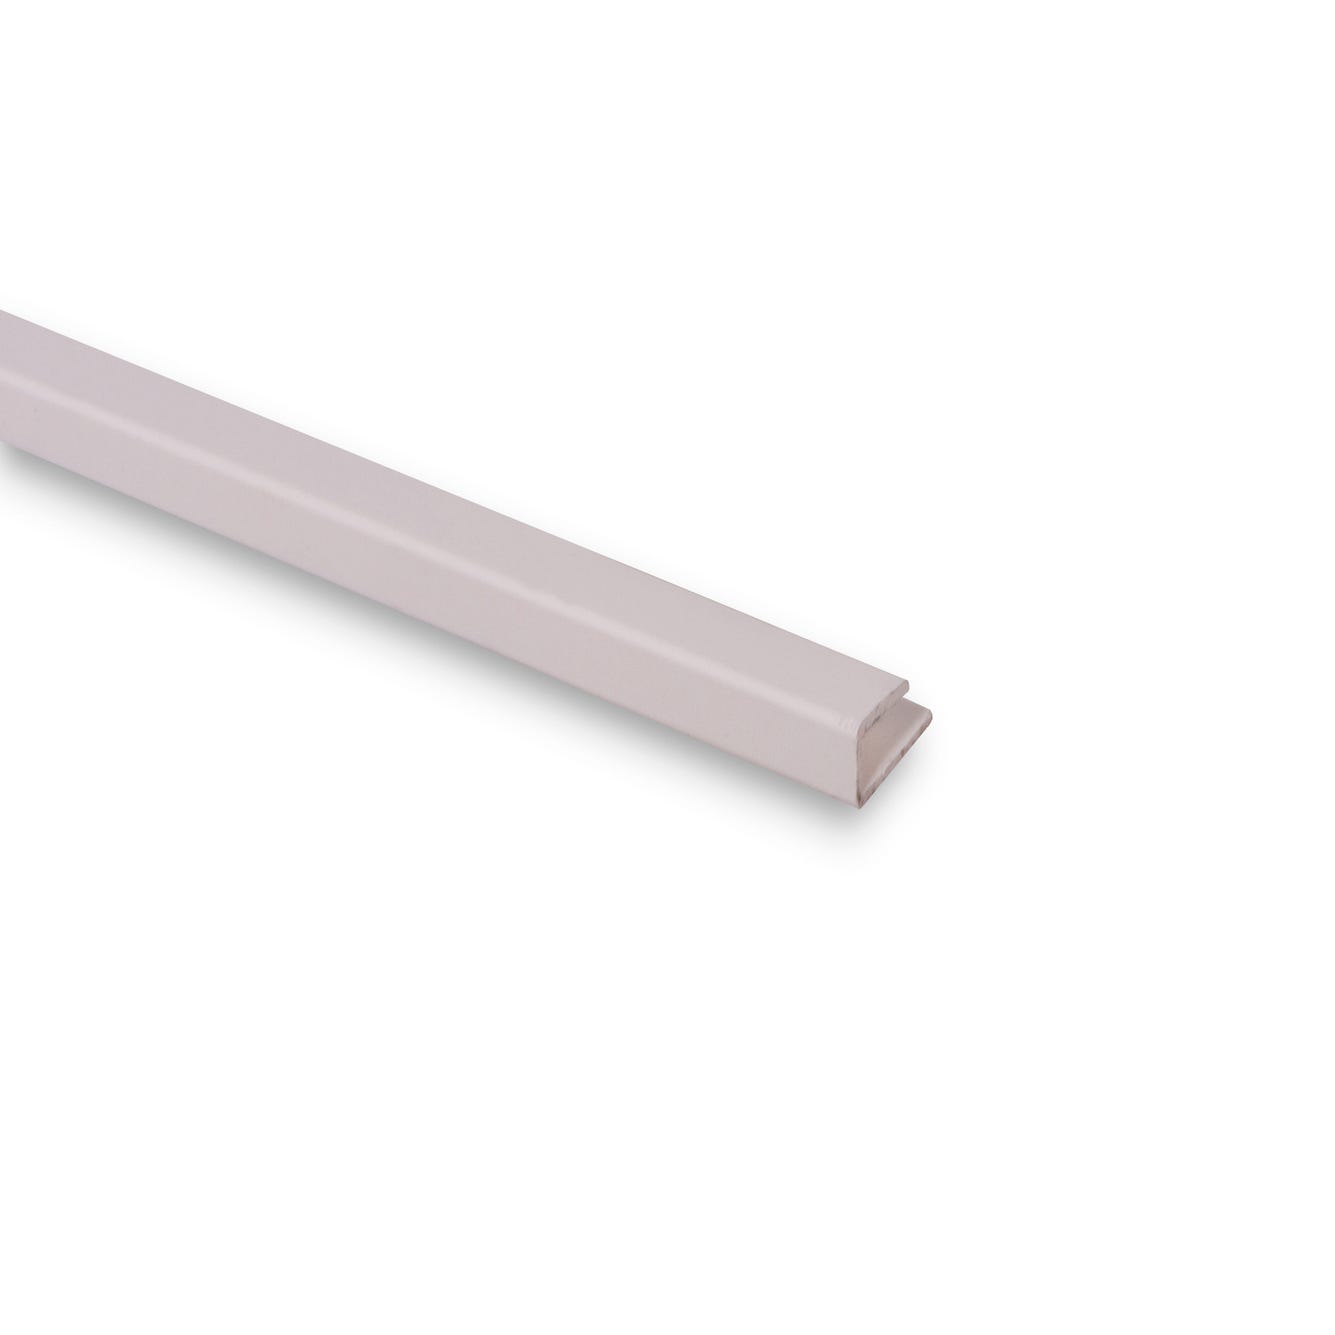 h PVC blanc pour épaisseur 3,5mm L. 260 cm - CQFD 0